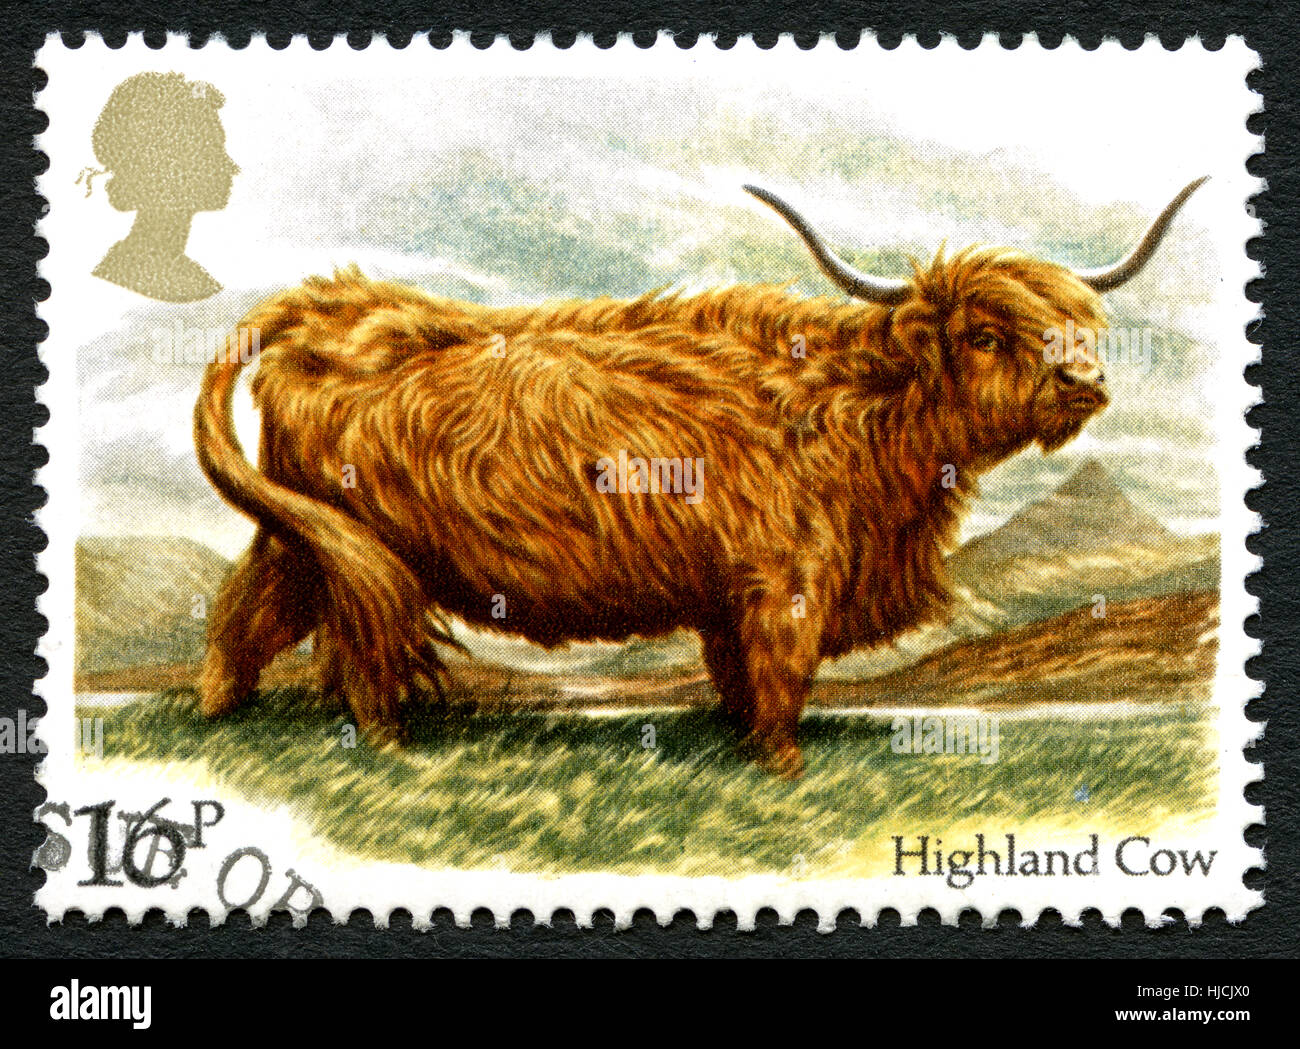 Gran Bretaña: circa 1983: Un sello utilizado en el Reino Unido, mostrando una ilustración de una vaca Highland, circa 1983. Foto de stock